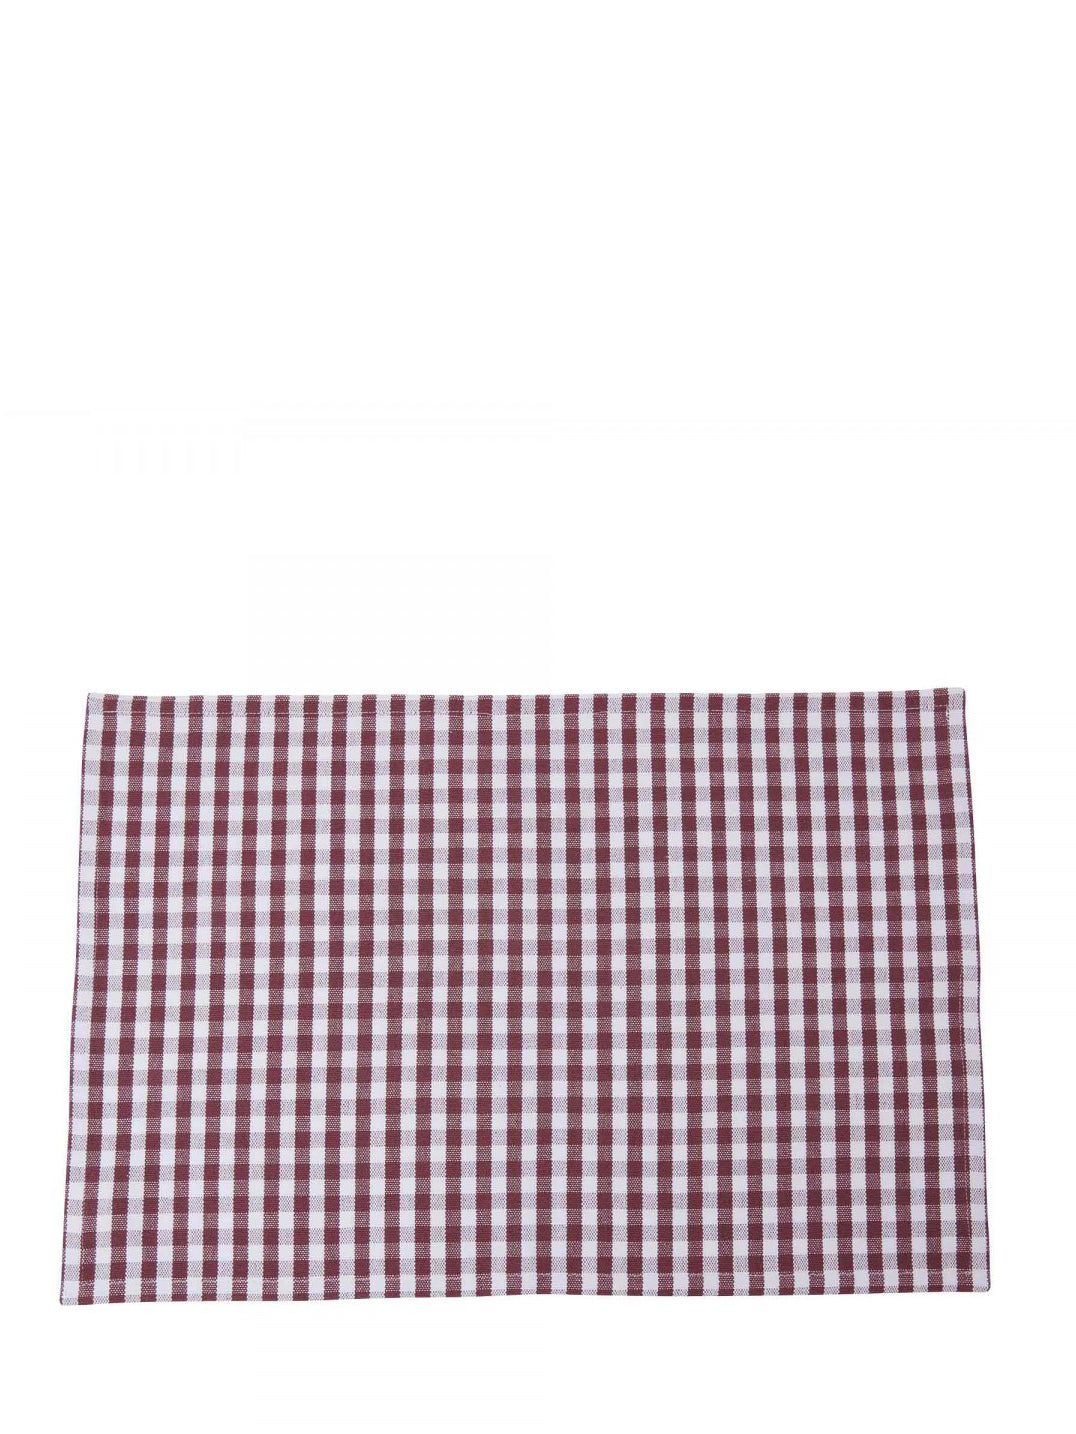 Cotton placemat, 3 colours (35x50 cm)